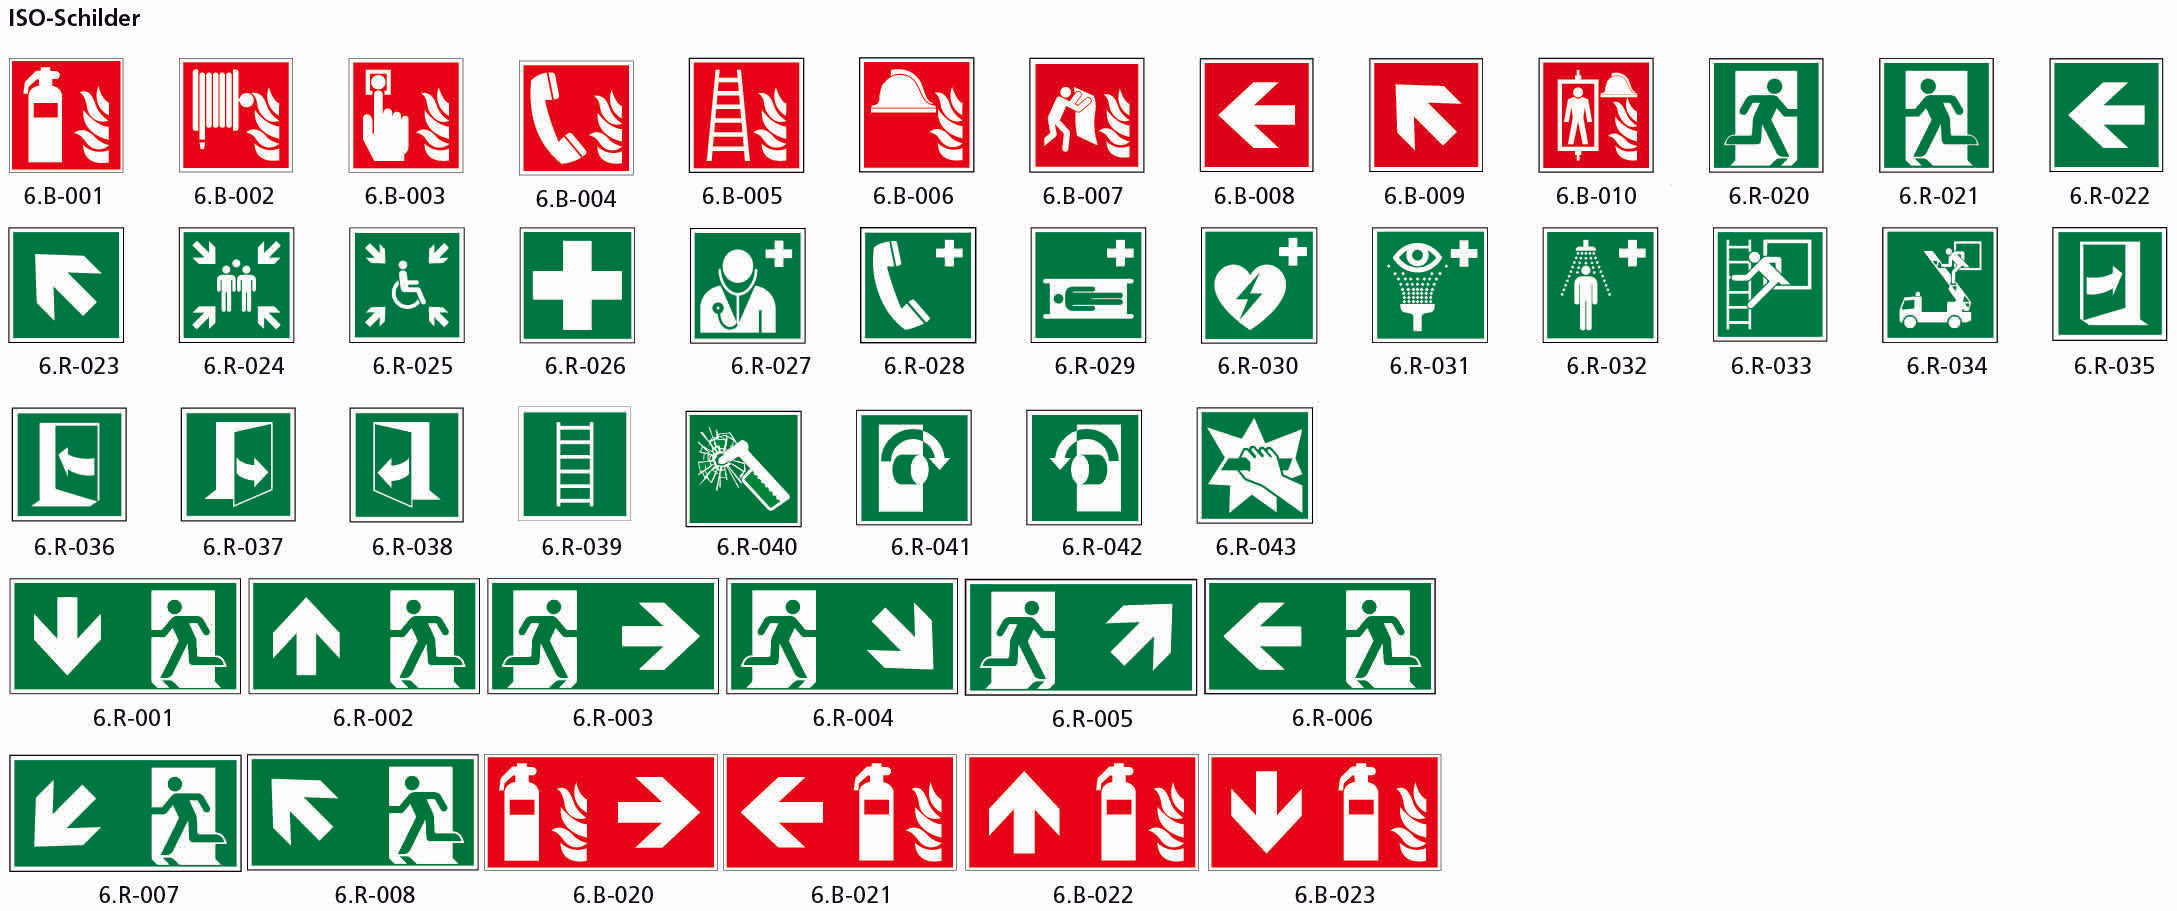 Fahnenschild doppelseitig, Rettungs- und Brandschutzzeichen, nachleuchtend, PK, 200 x 200 mm, gemäss Logobibliothek